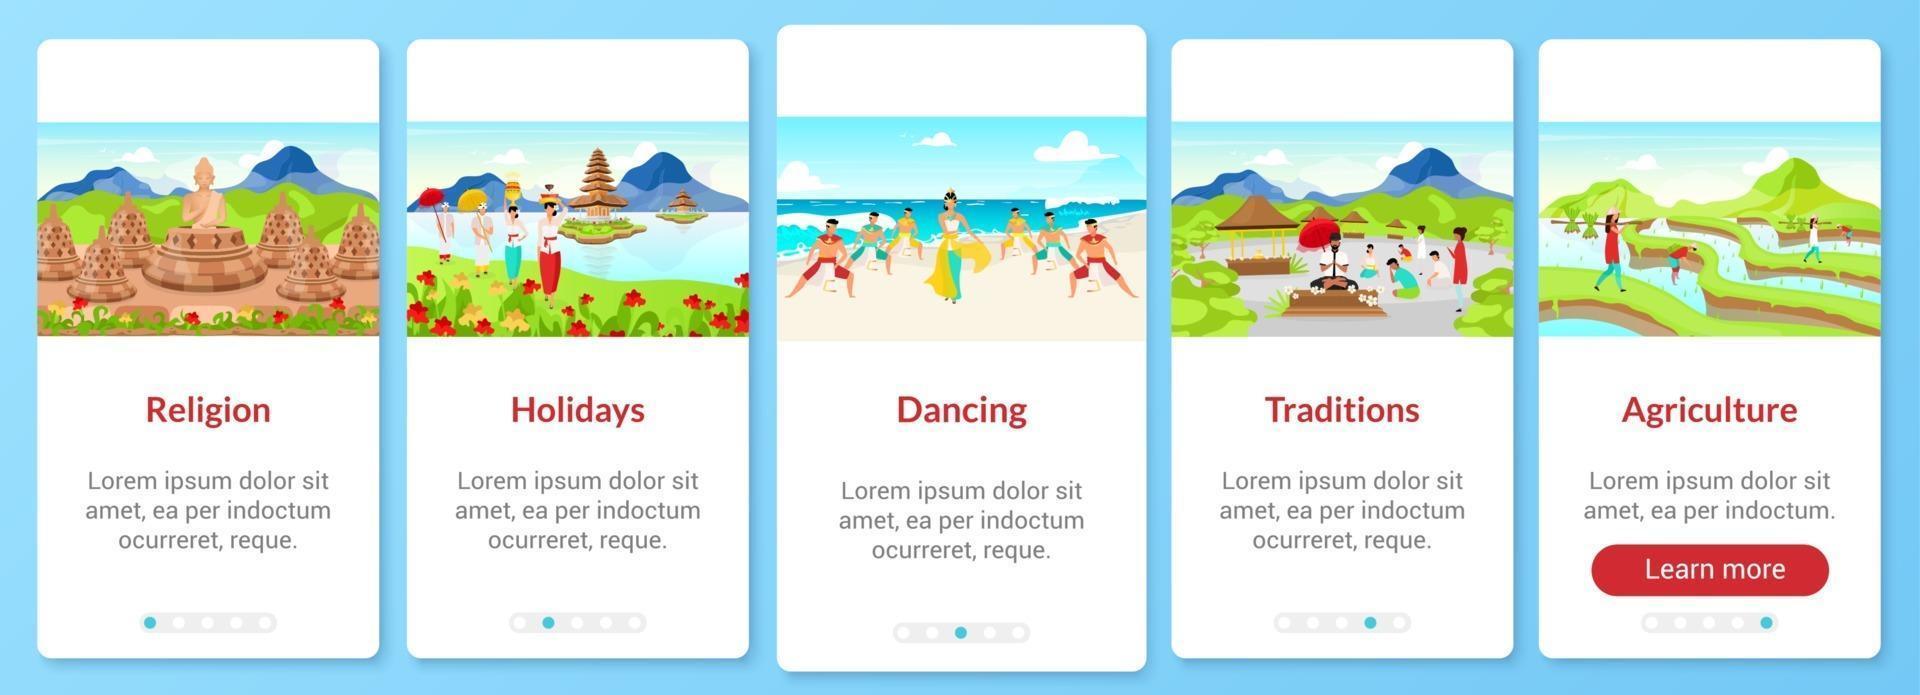 indonesië cultuur onboarding mobiele app scherm vector sjabloon. Toeristische attracties. walkthrough website stappen met platte karakters. ux, ui, gui smartphone cartoon interface concept